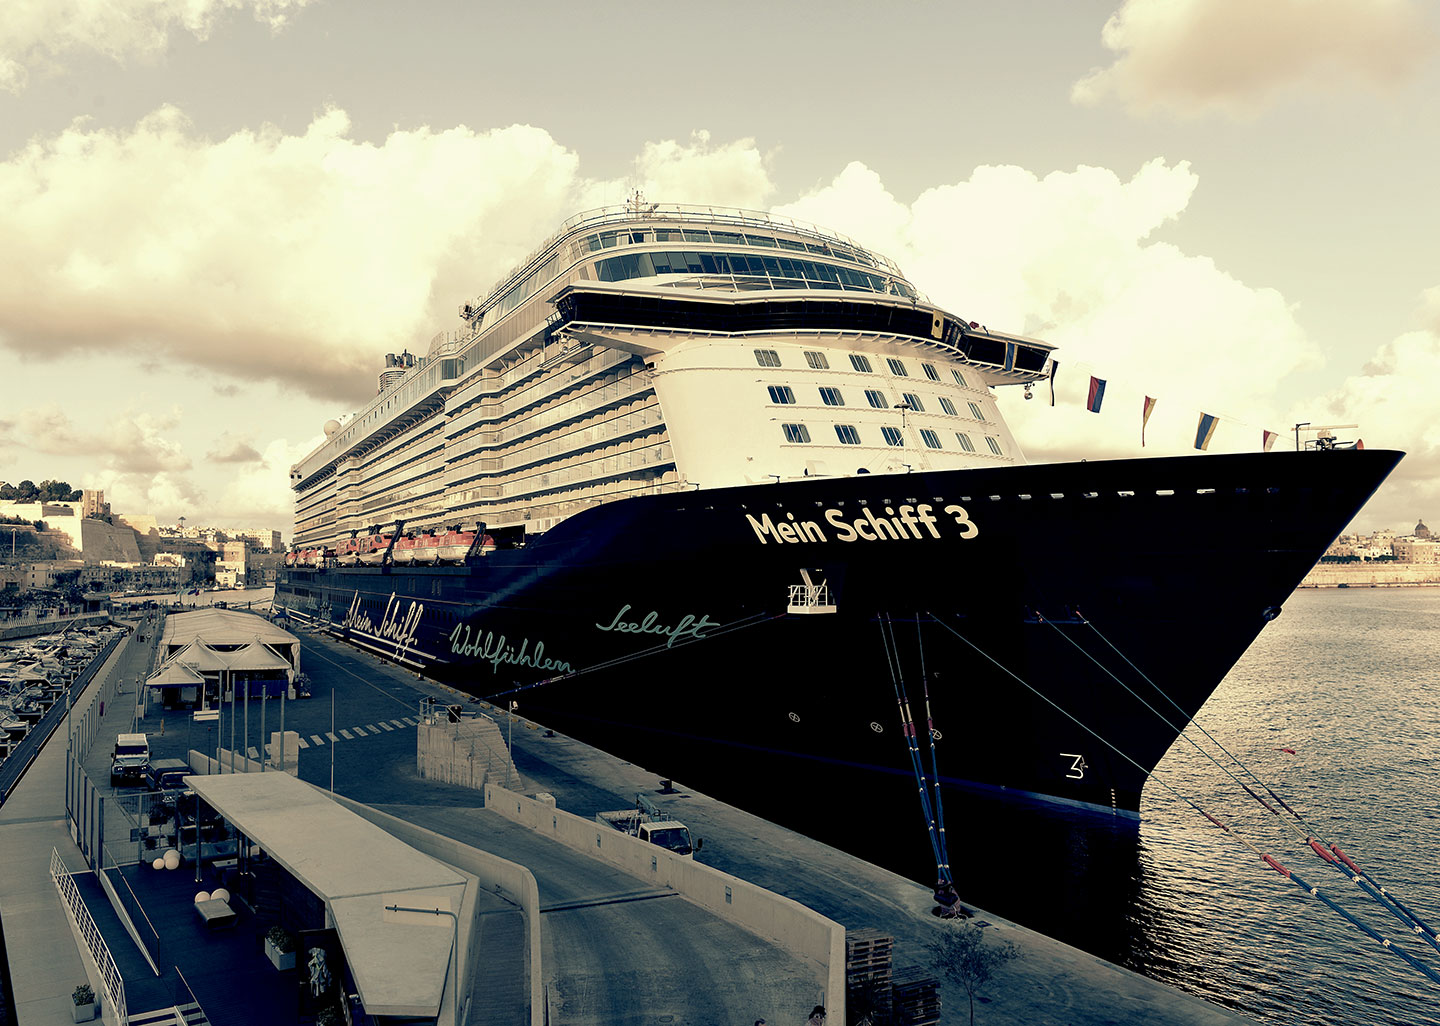 Mein Schiff 3 welcomed at Valletta Cruise Port